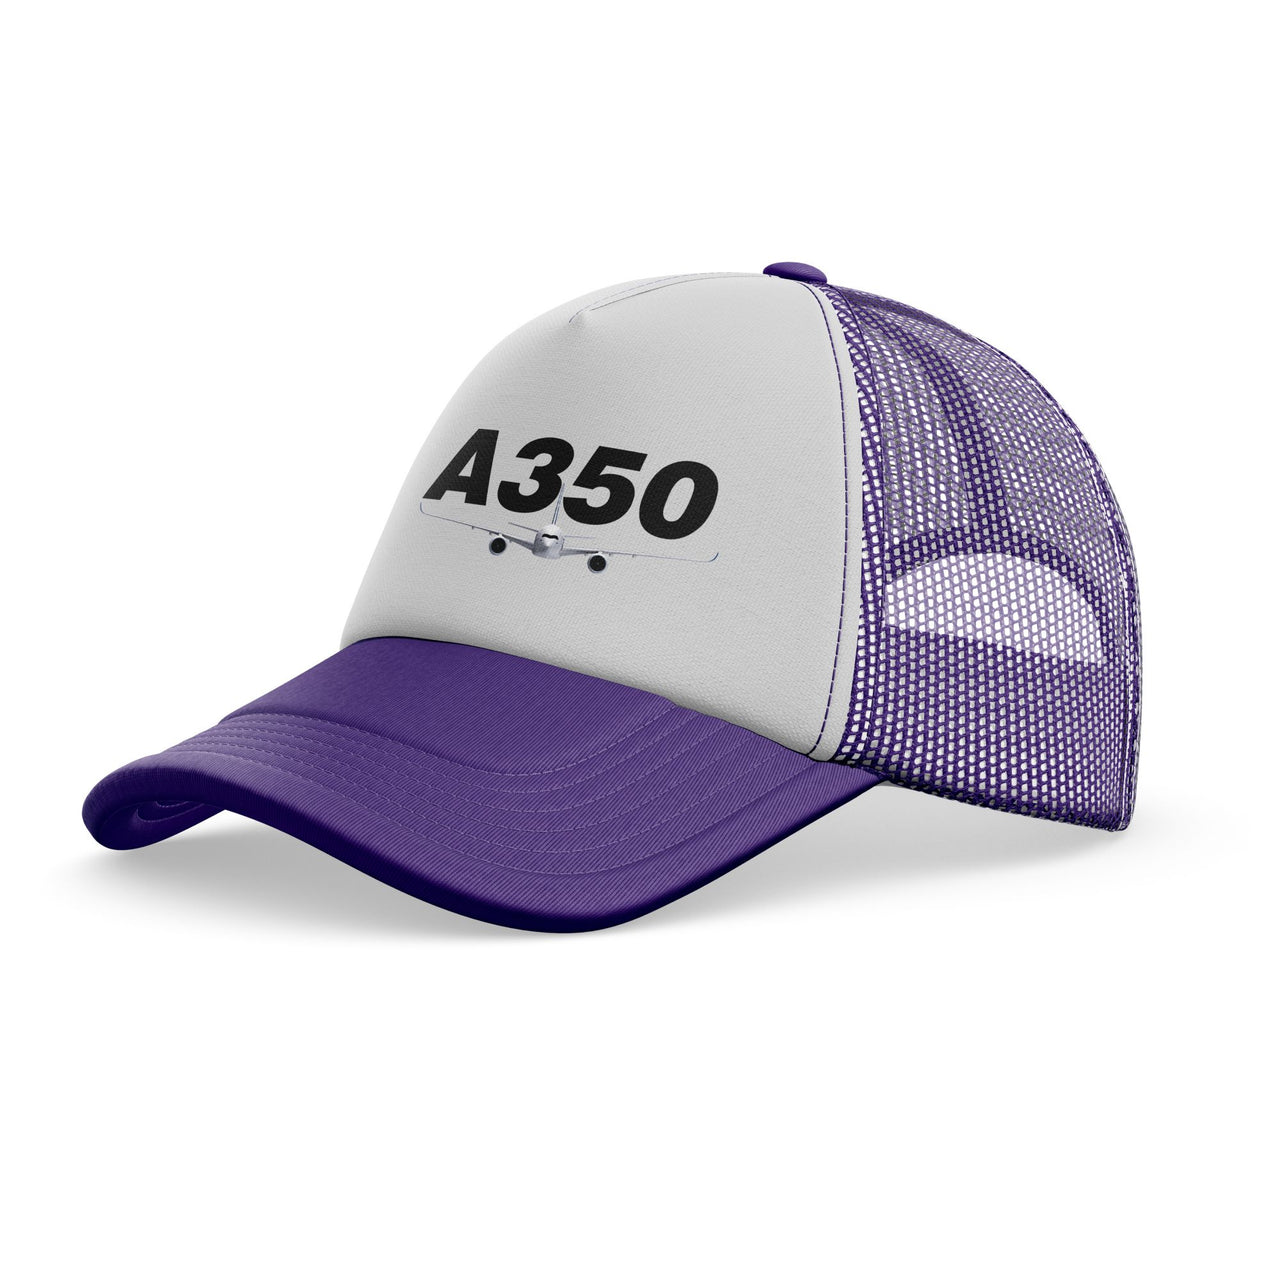 Super Airbus A350 Designed Trucker Caps & Hats